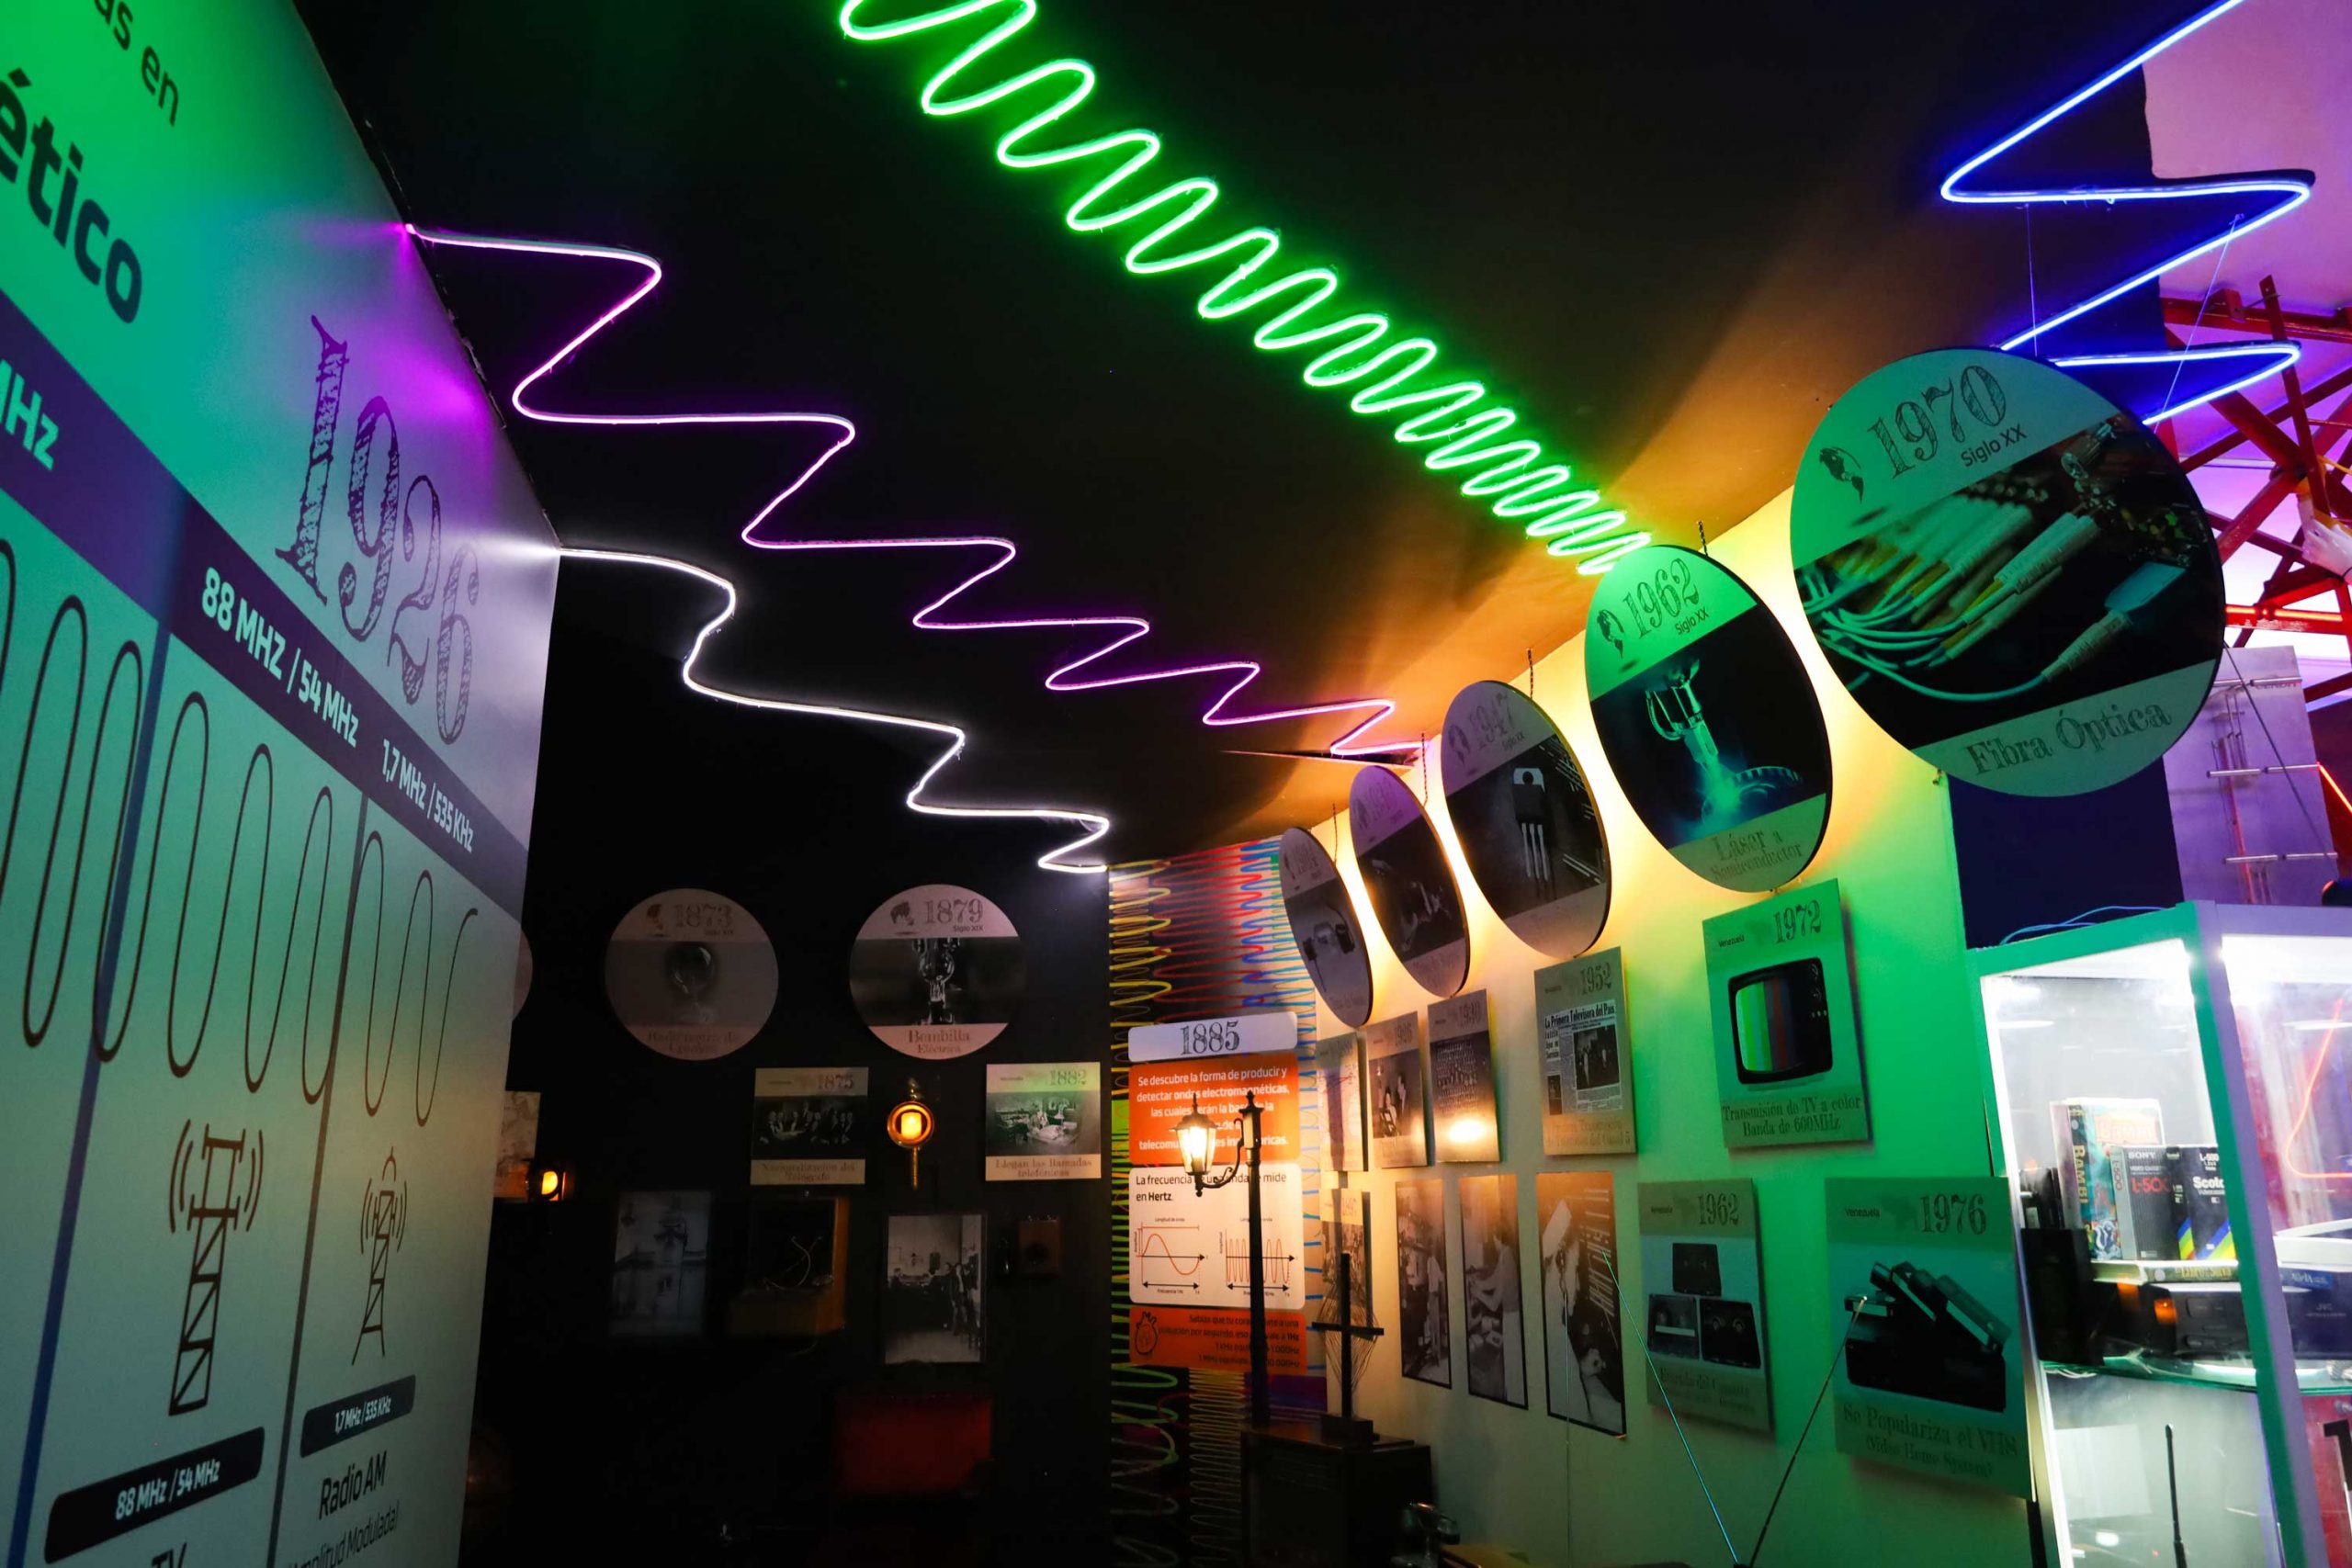 Sala de Electromagnetismo del Museo de Ciencias hace un viaje por el pasado, presente y futuro de las telecomunicaciones